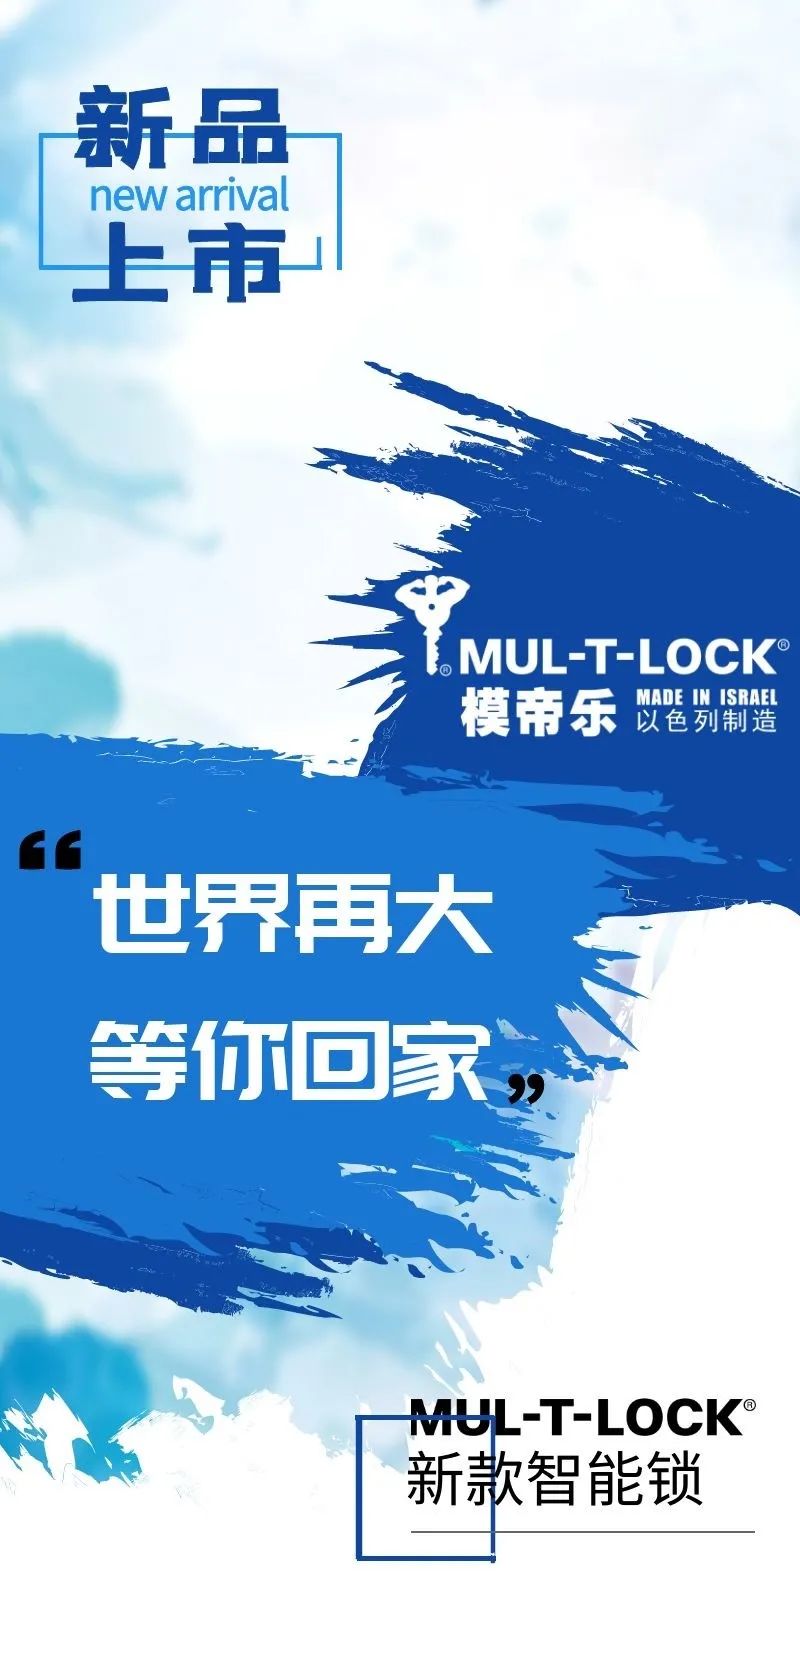 以色列MUL-T-LOCK | 新品上市